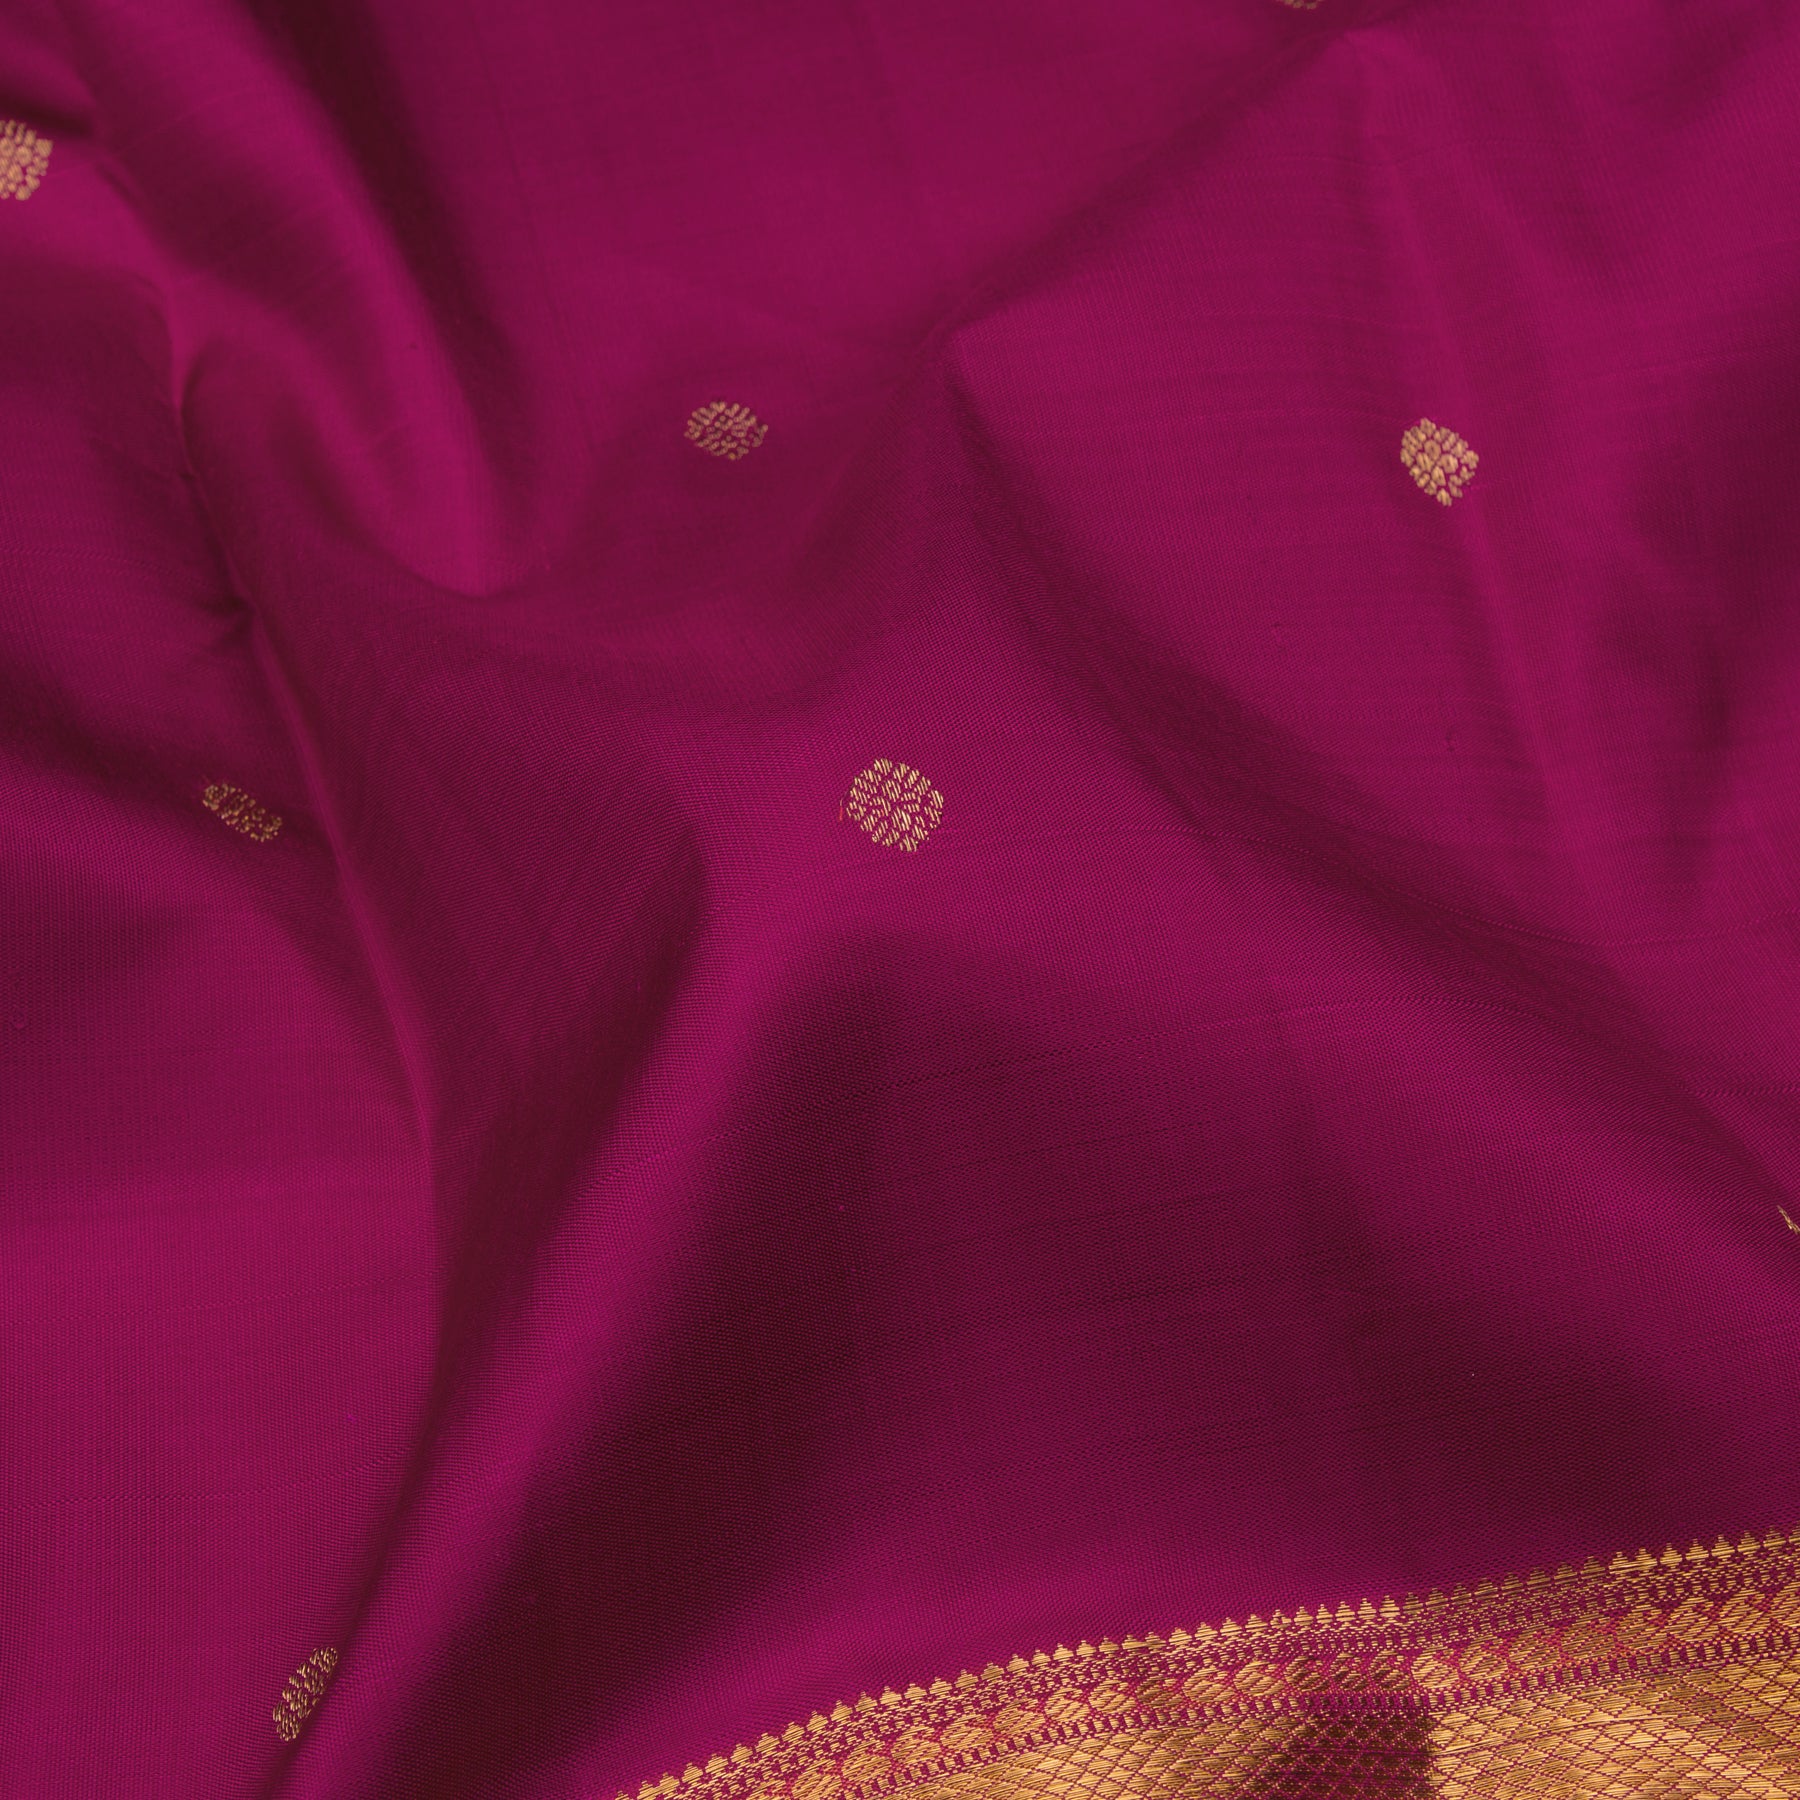 Kanakavalli Kanjivaram Silk Sari 23-110-HS001-11593 - Fabric View